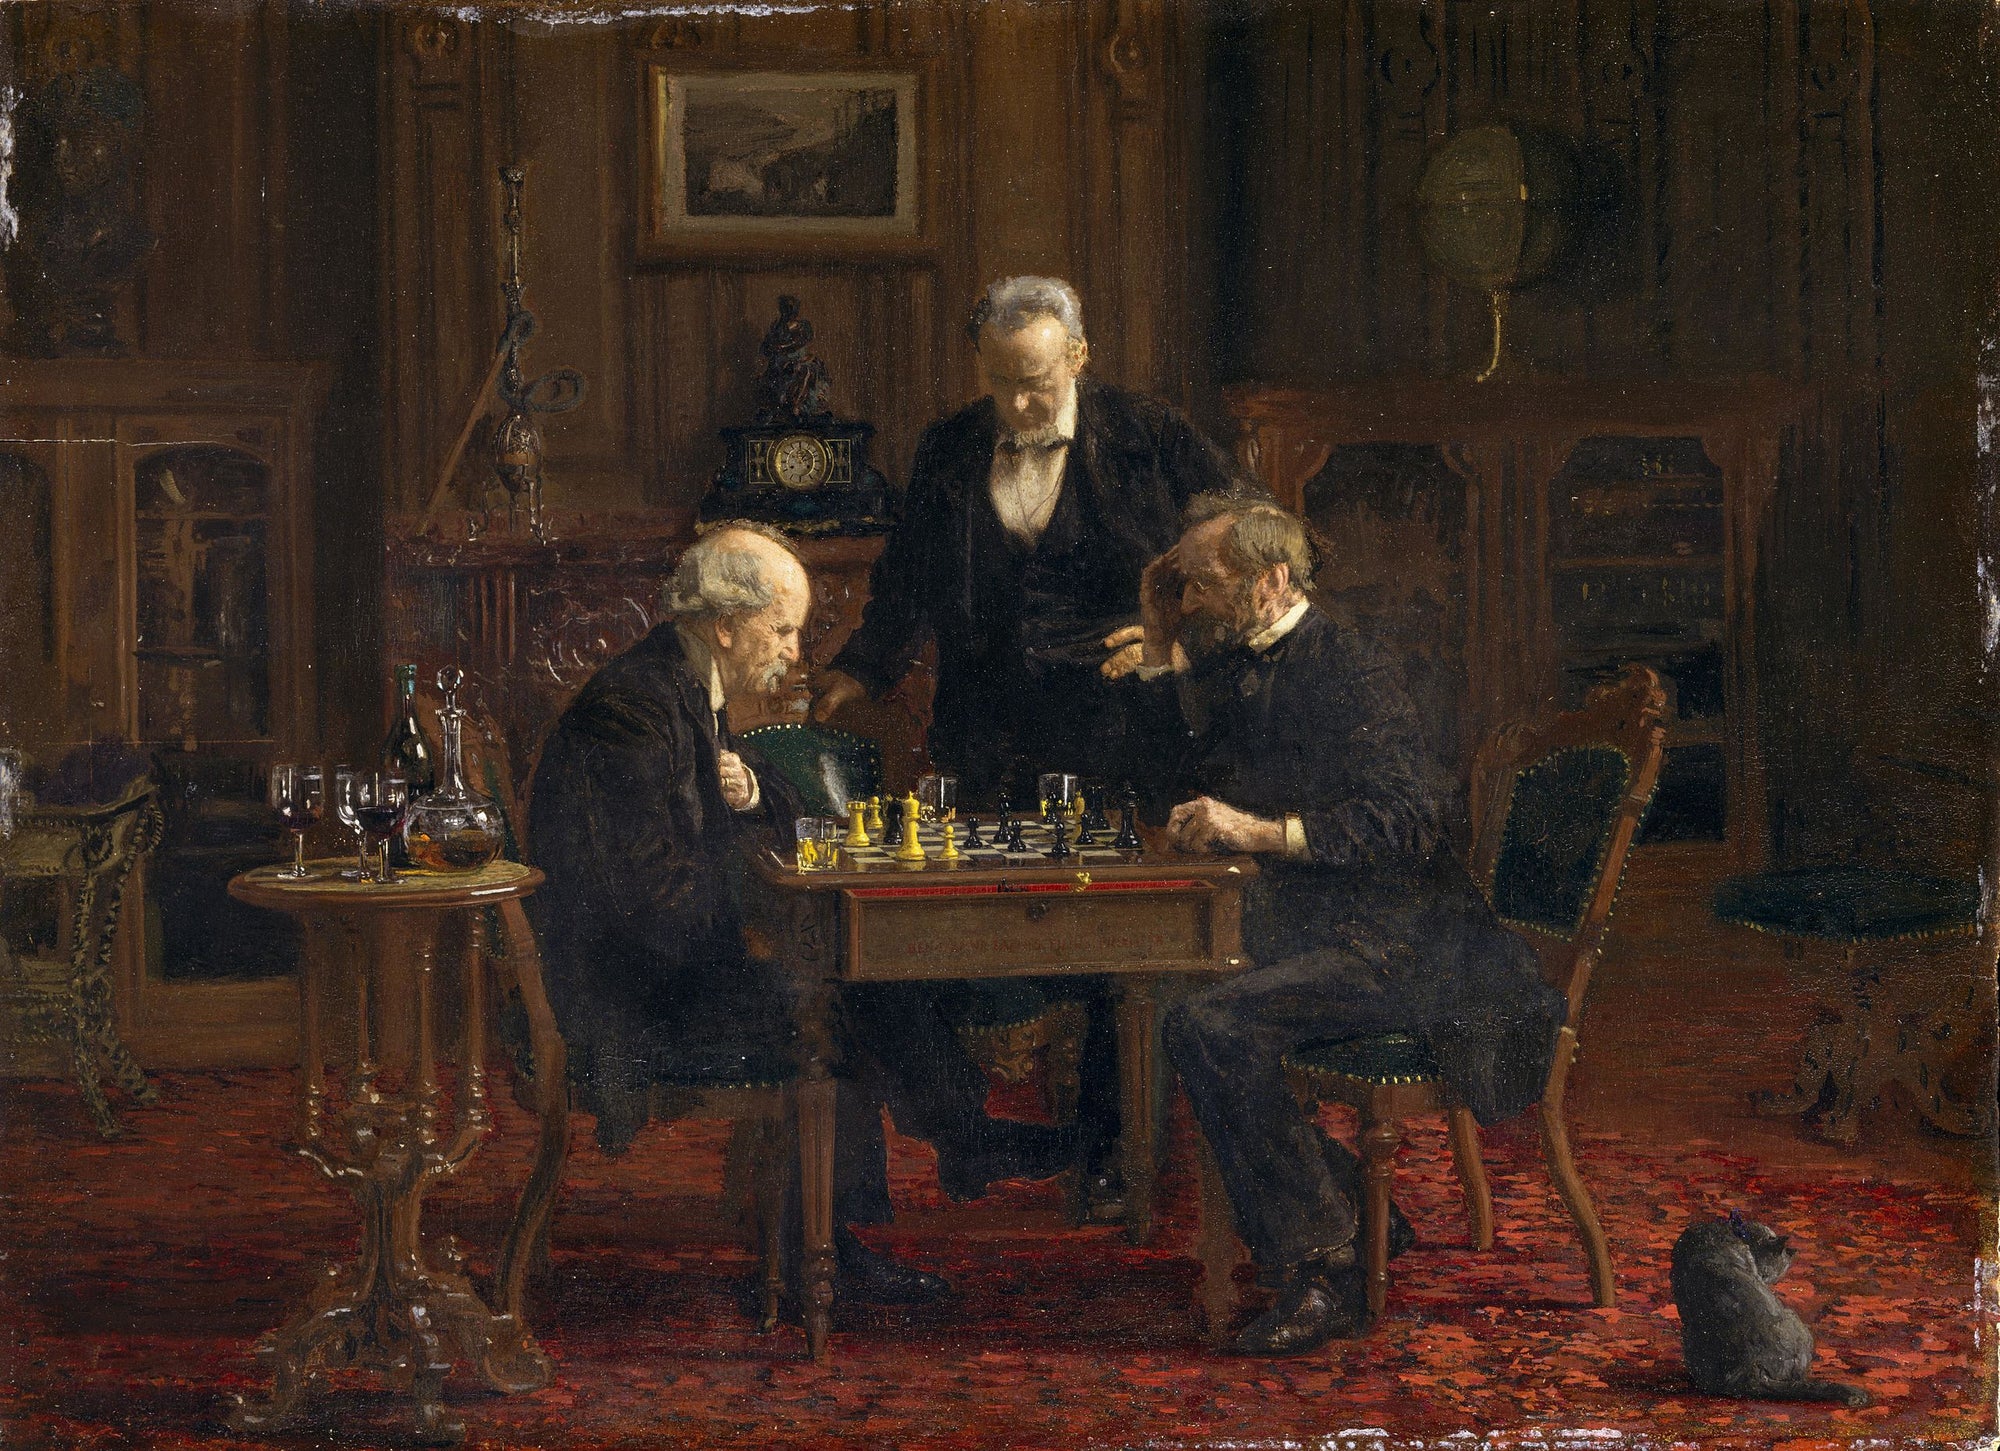 Les joueurs d'échecs - Thomas Eakins